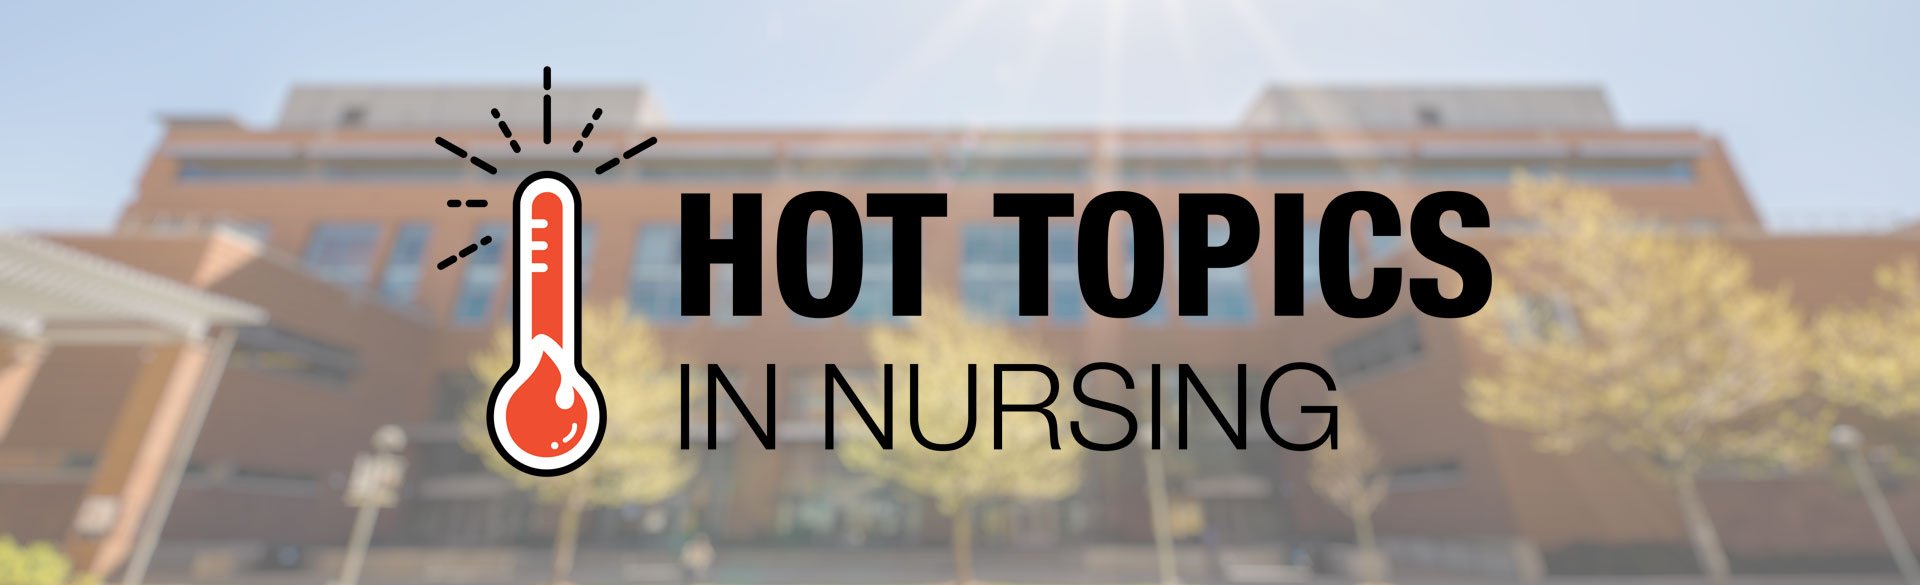 Hot Topics in Nursing at CU College of Nursing